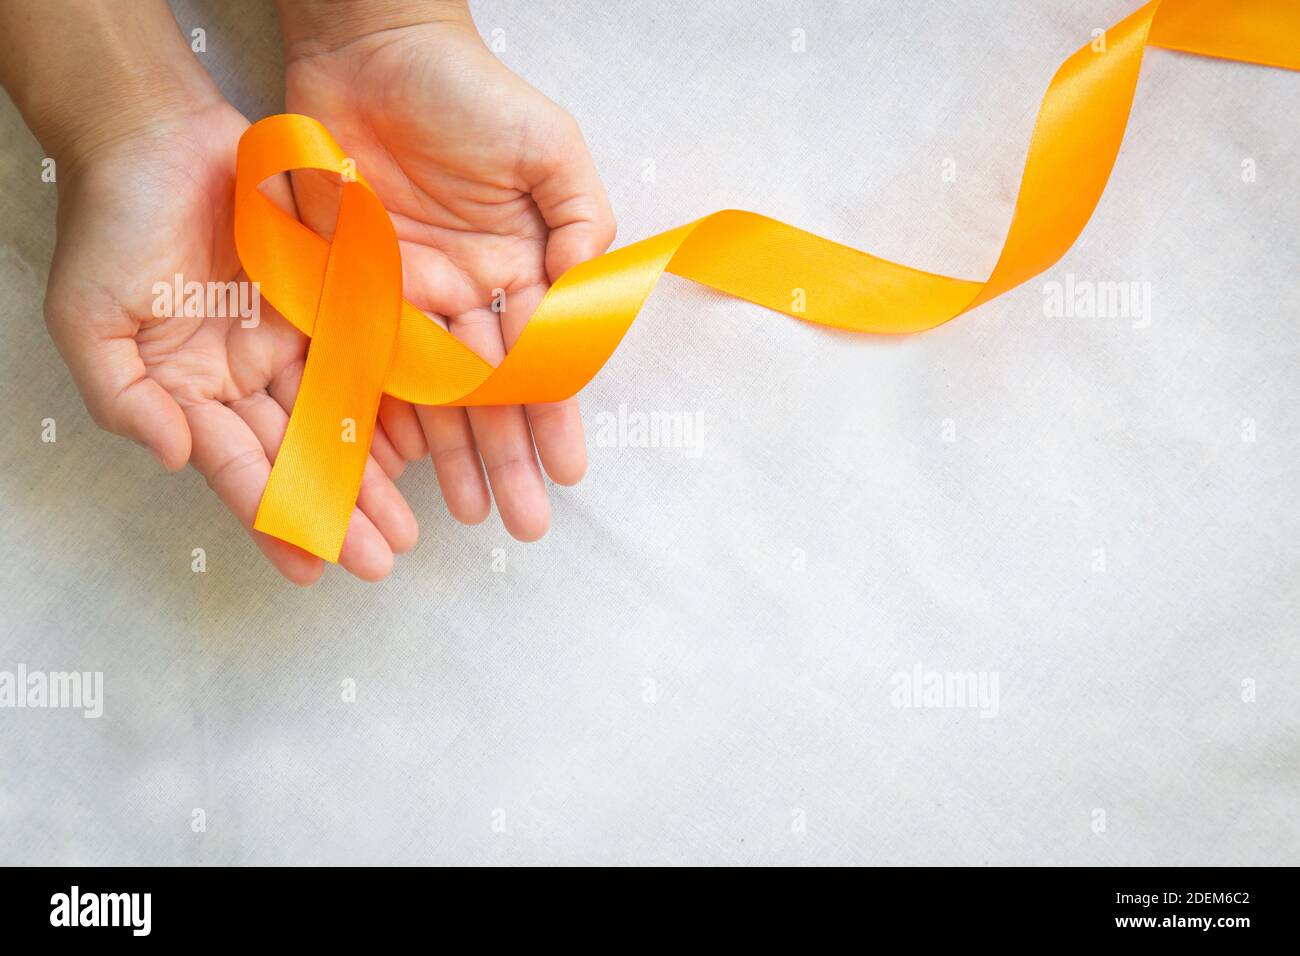 Hände mit orangefarbenem Farbband auf weißem Stoff mit Kopierfläche. Bewusstsein für Nierenkrebs, Leukämieerkrankungen, Bewusstsein für Hautkrebs, Weltkrebstag. Stockfoto